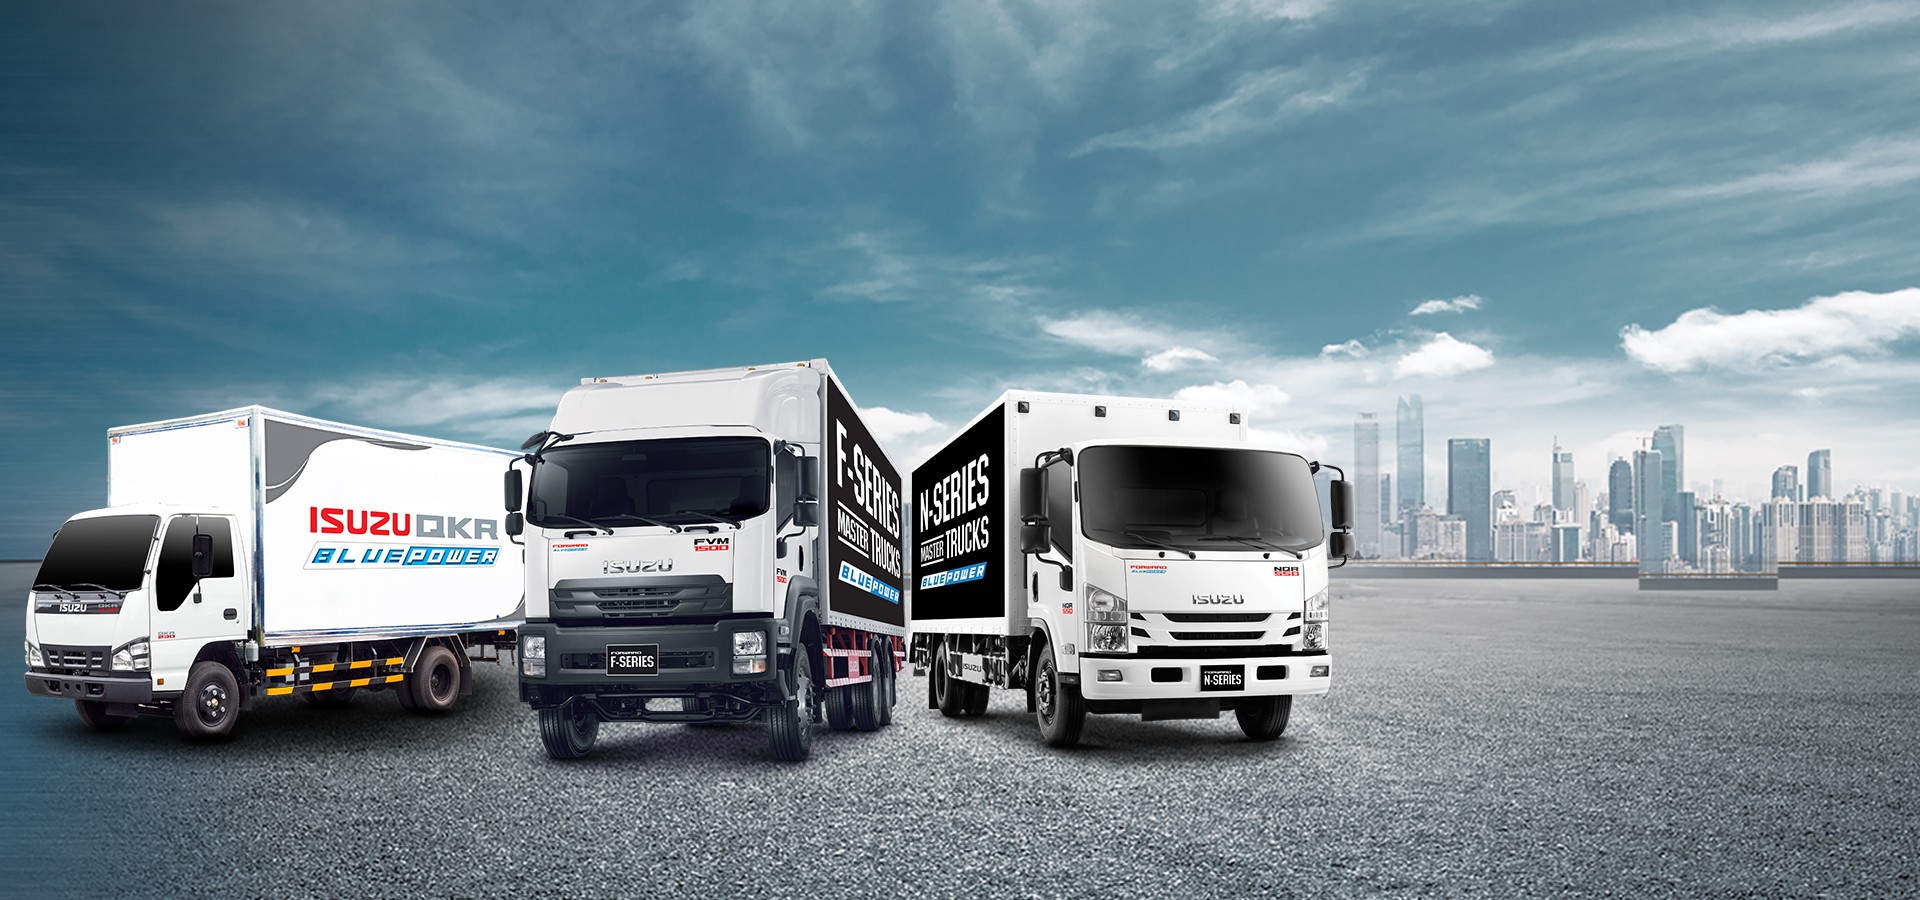 Xe Tải Isuzu: Với kinh nghiệm hơn 100 năm trong ngành sản xuất xe tải và động cơ, Isuzu là một trong những thương hiệu hàng đầu về xe tải. Hãy xem hình ảnh của những chiếc xe tải Isuzu với tải trọng và khả năng vận hành tối ưu. Isuzu chắc chắn sẽ là giải pháp tốt nhất cho doanh nghiệp vận tải của bạn.